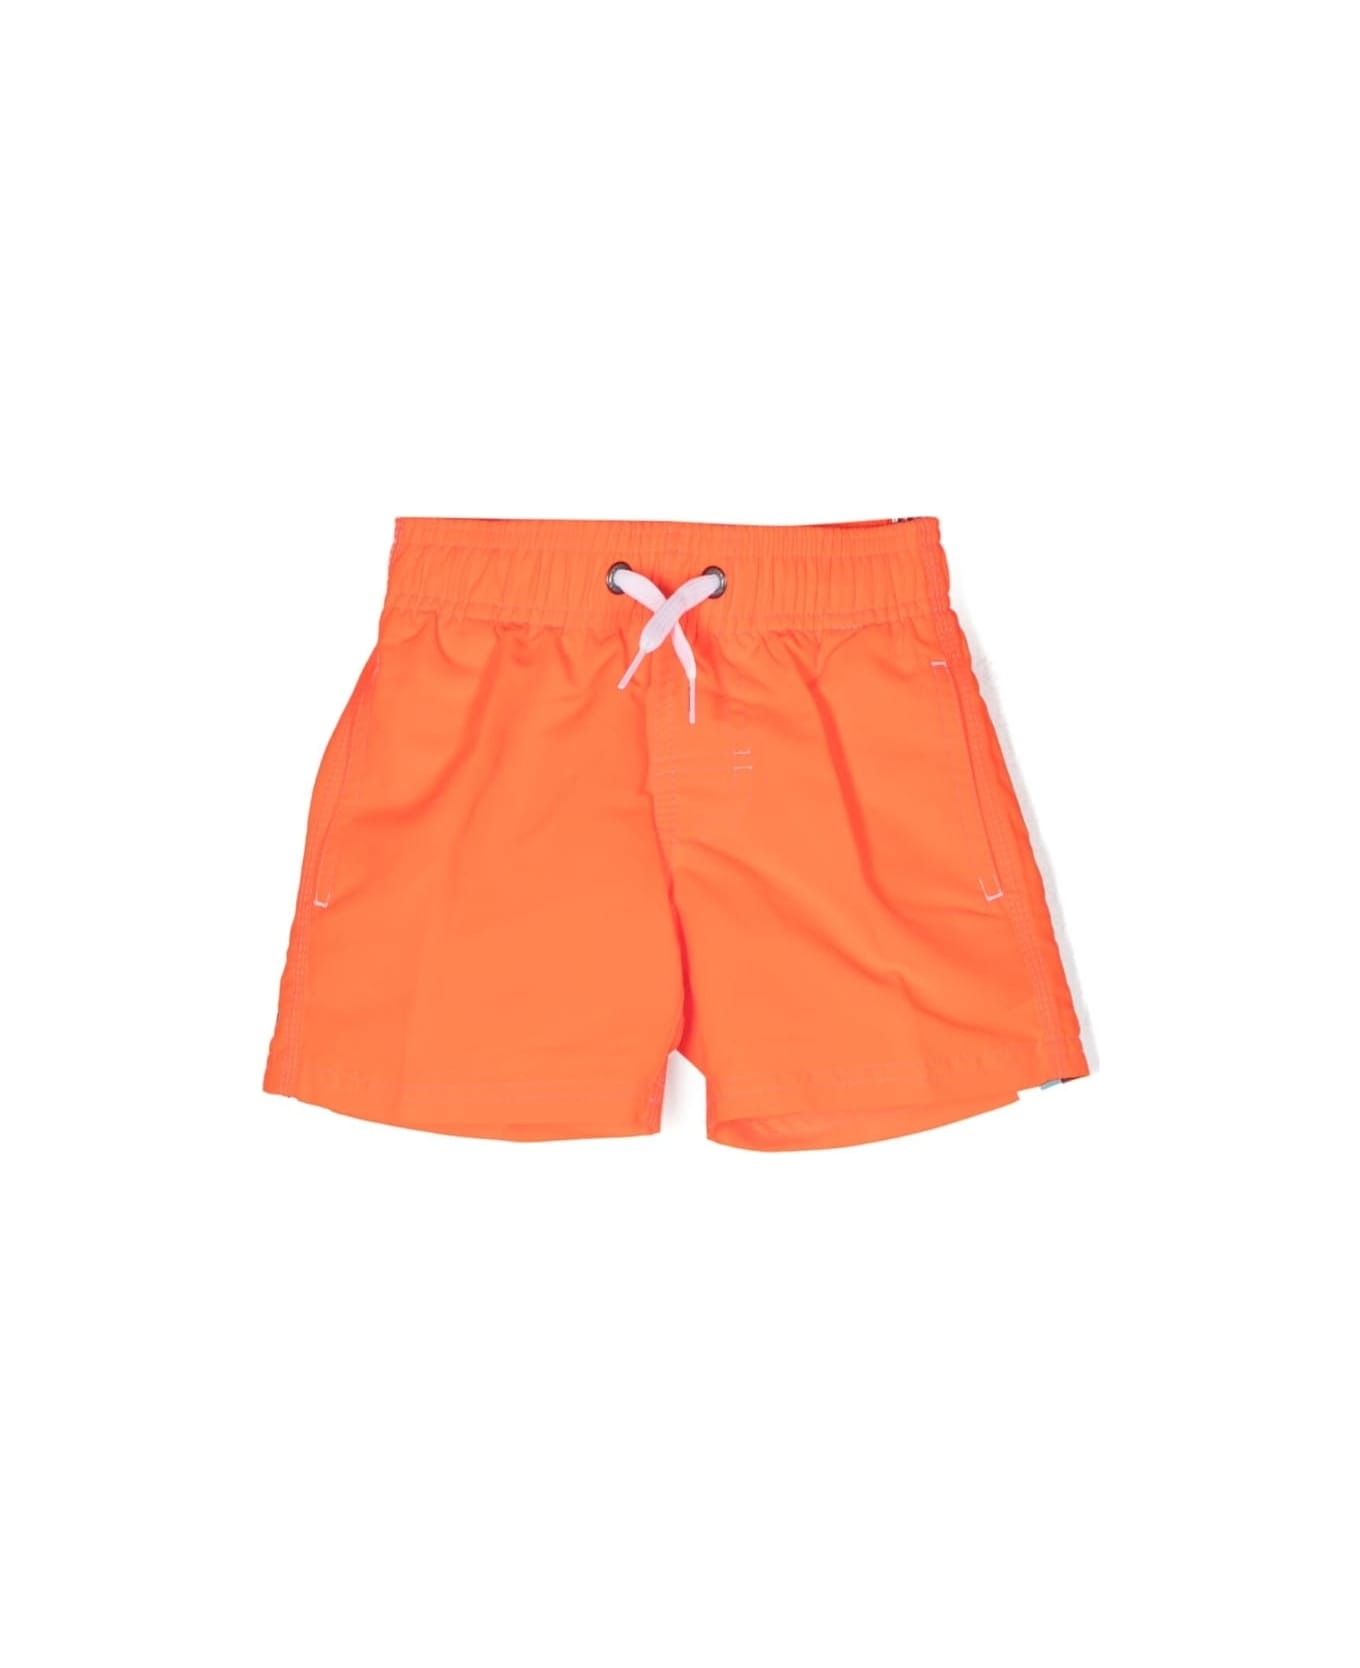 Bonton Swimsuit With Print - Orange